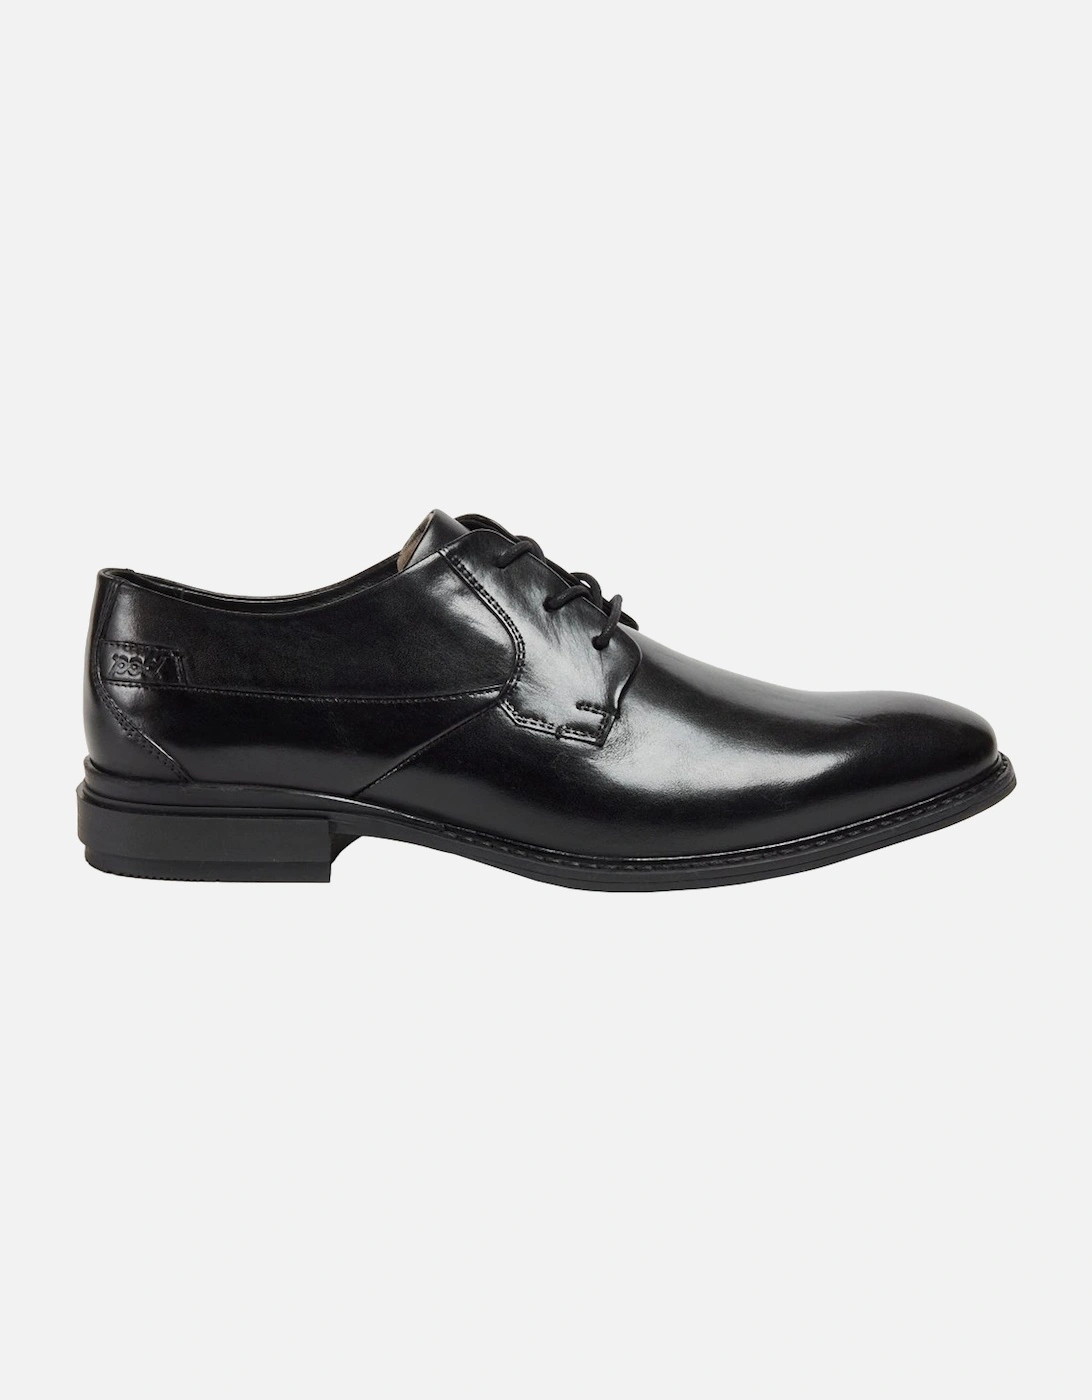 Smyth Mens Formal Shoes, 7 of 6